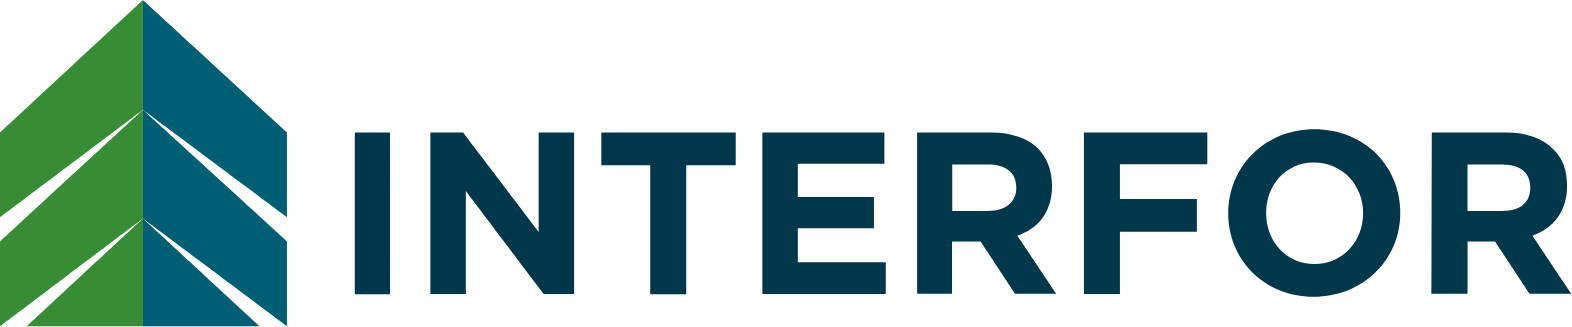 Interfor logo large (transparent PNG)